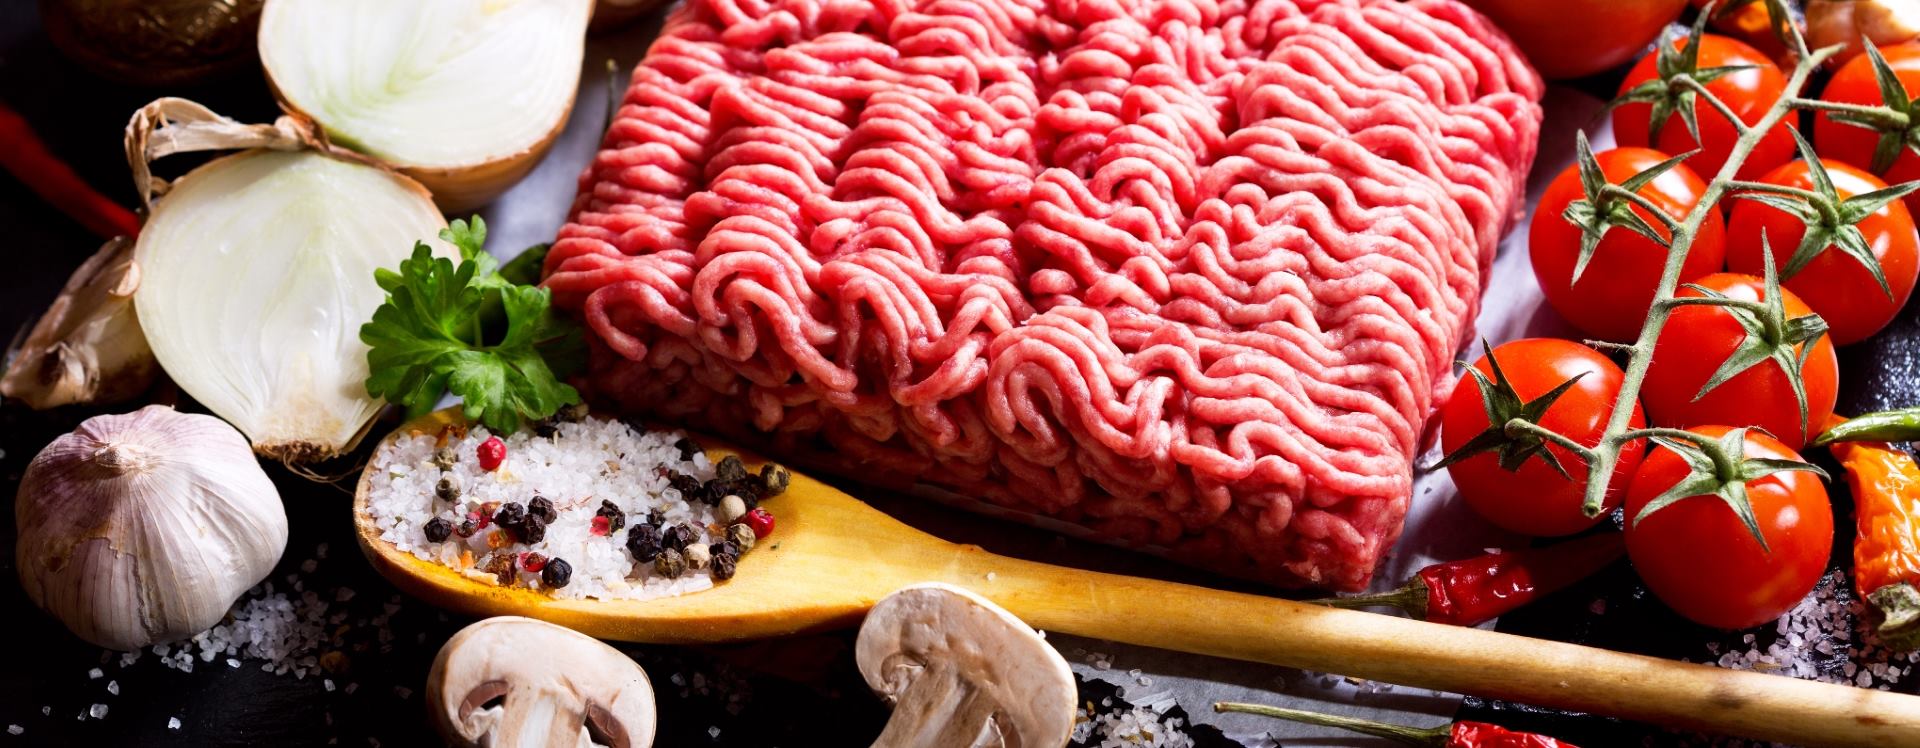 NEOPHODAN NUTRIJENT Kolin iz crvenog mesa pozitivno utječe na jetru i mozak